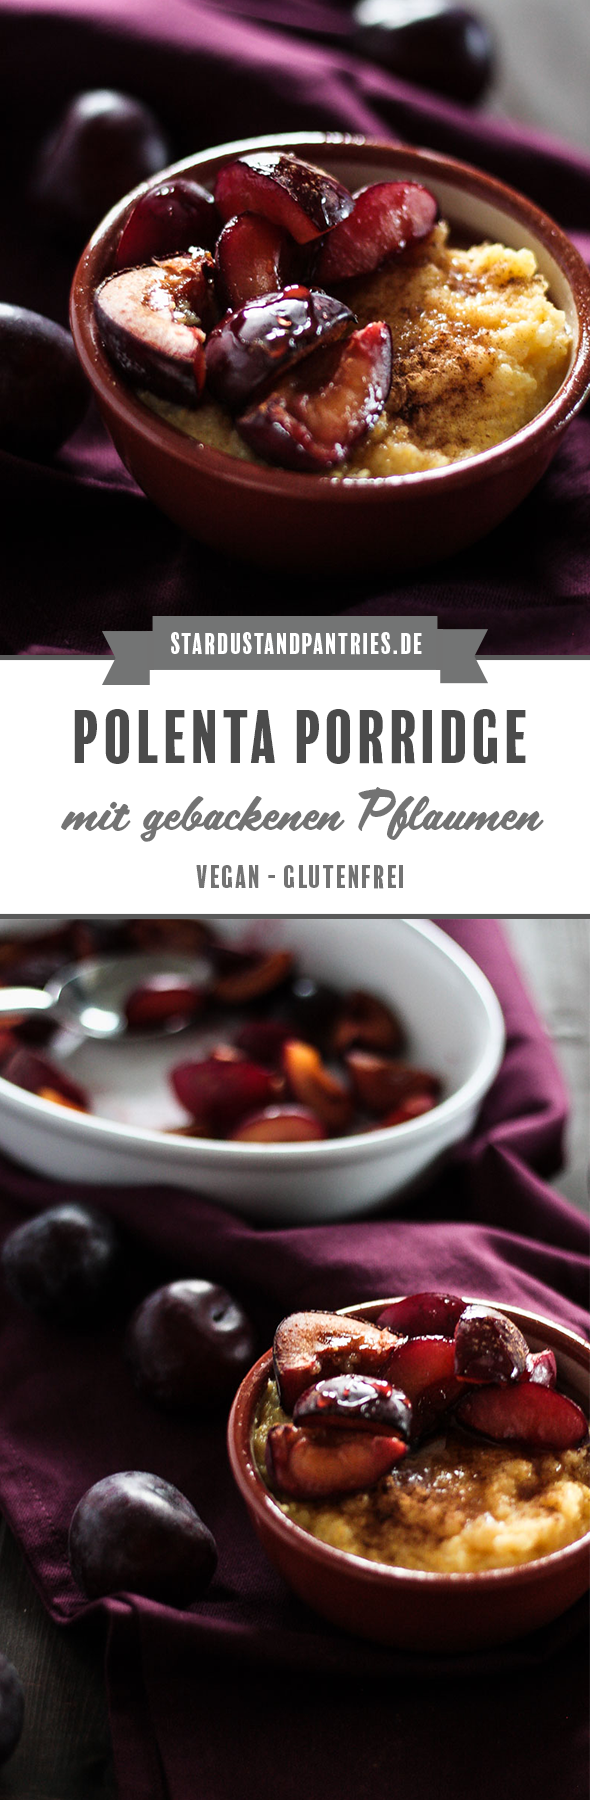 Veganes und glutenfreies Polenta Porridge mit gebackenen Pflaumen ist eine leckere Alternative zu Haferbrei/ Porridge mit Haferflocken. Ein sättigendes und gemütliches Frühstück. #Frühstück #Porridge #Polenta #Pflaumen #Vgean #Glutenfrei